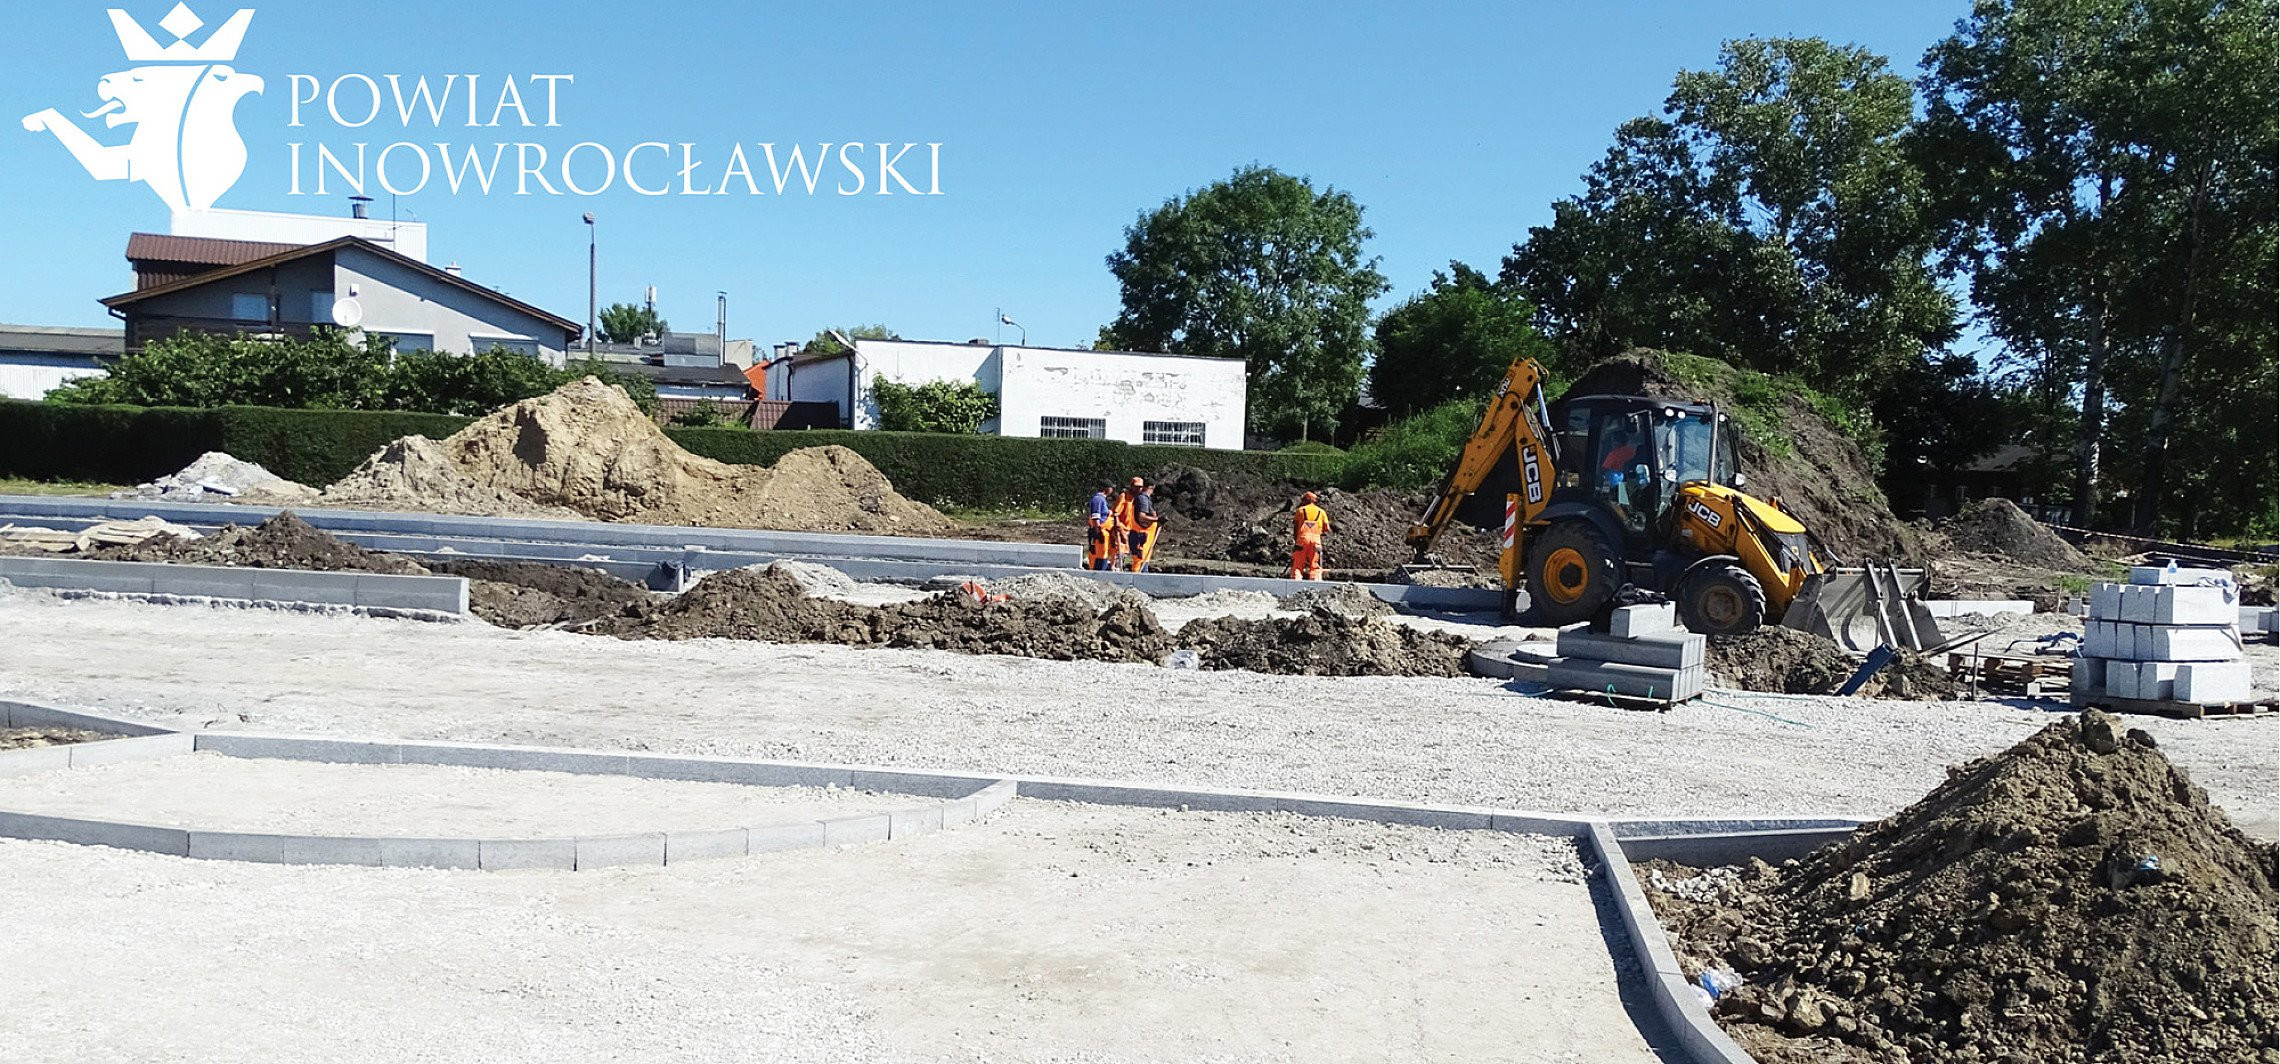 Inowrocław - Sprawdzamy postępy na budowie ronda turbinowego